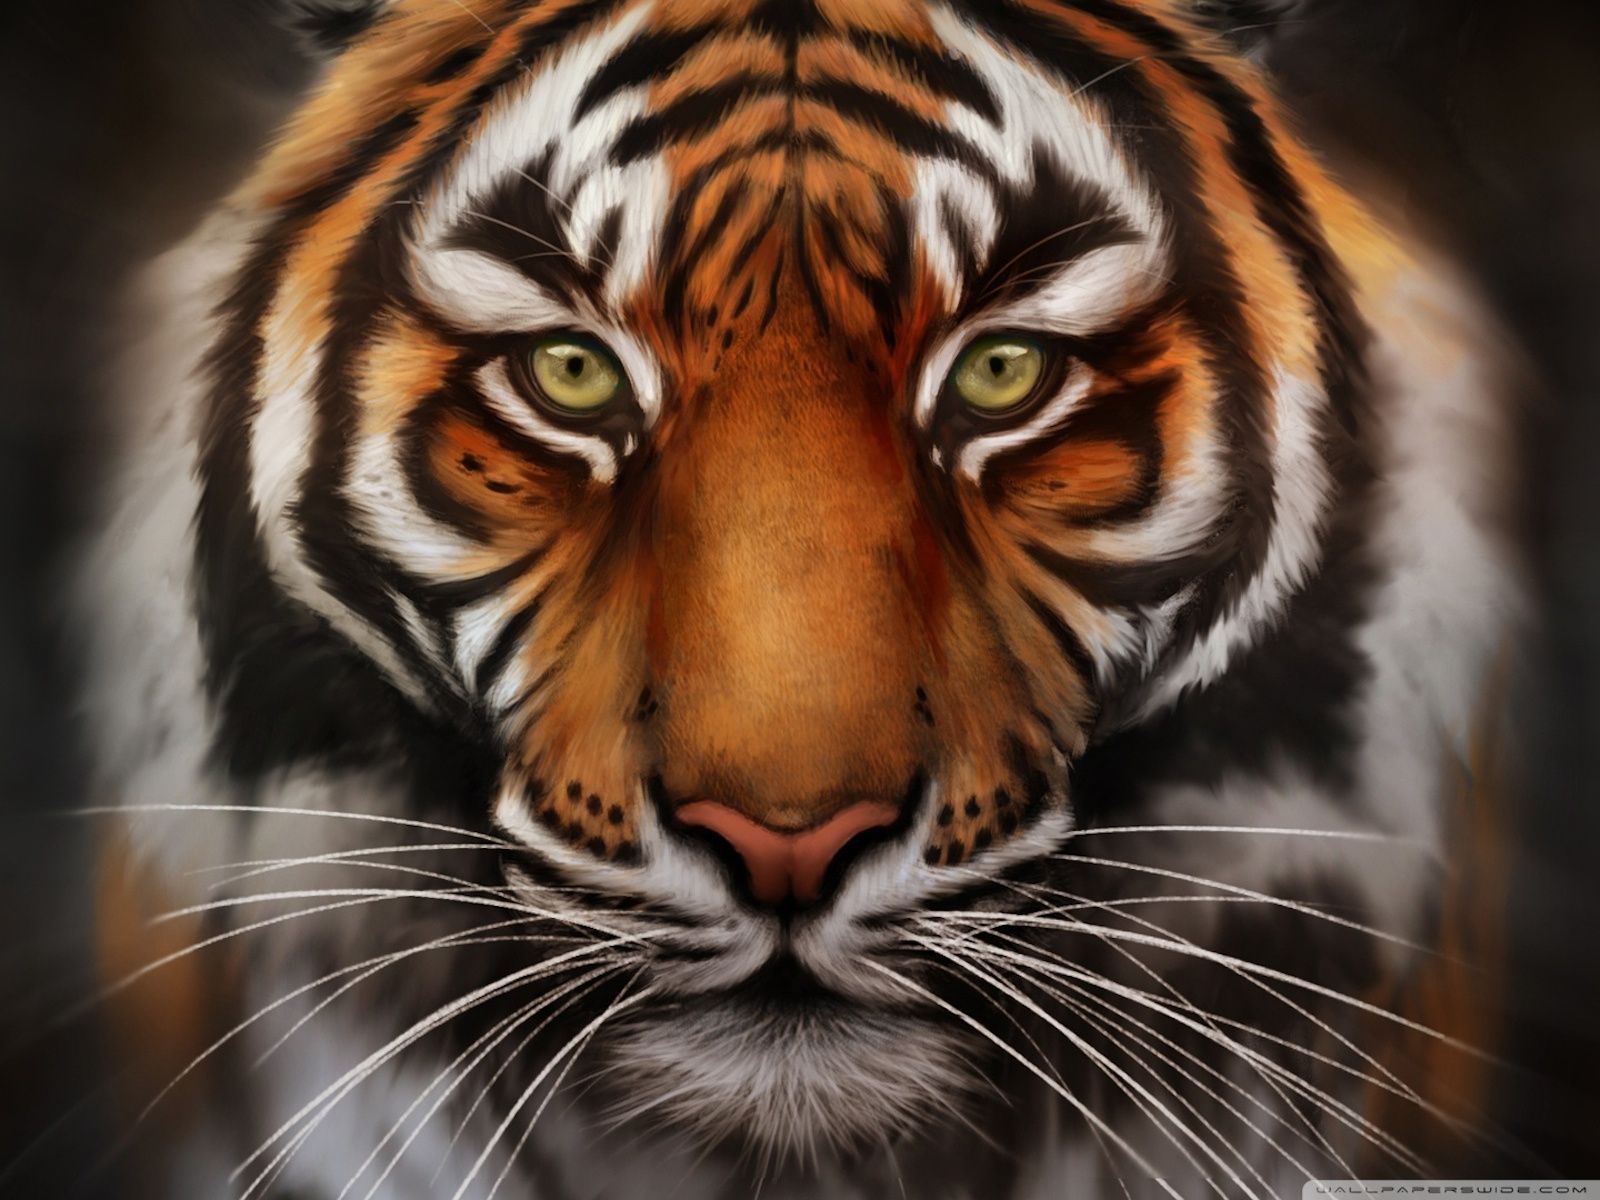 Tiger Face - wallpaper.